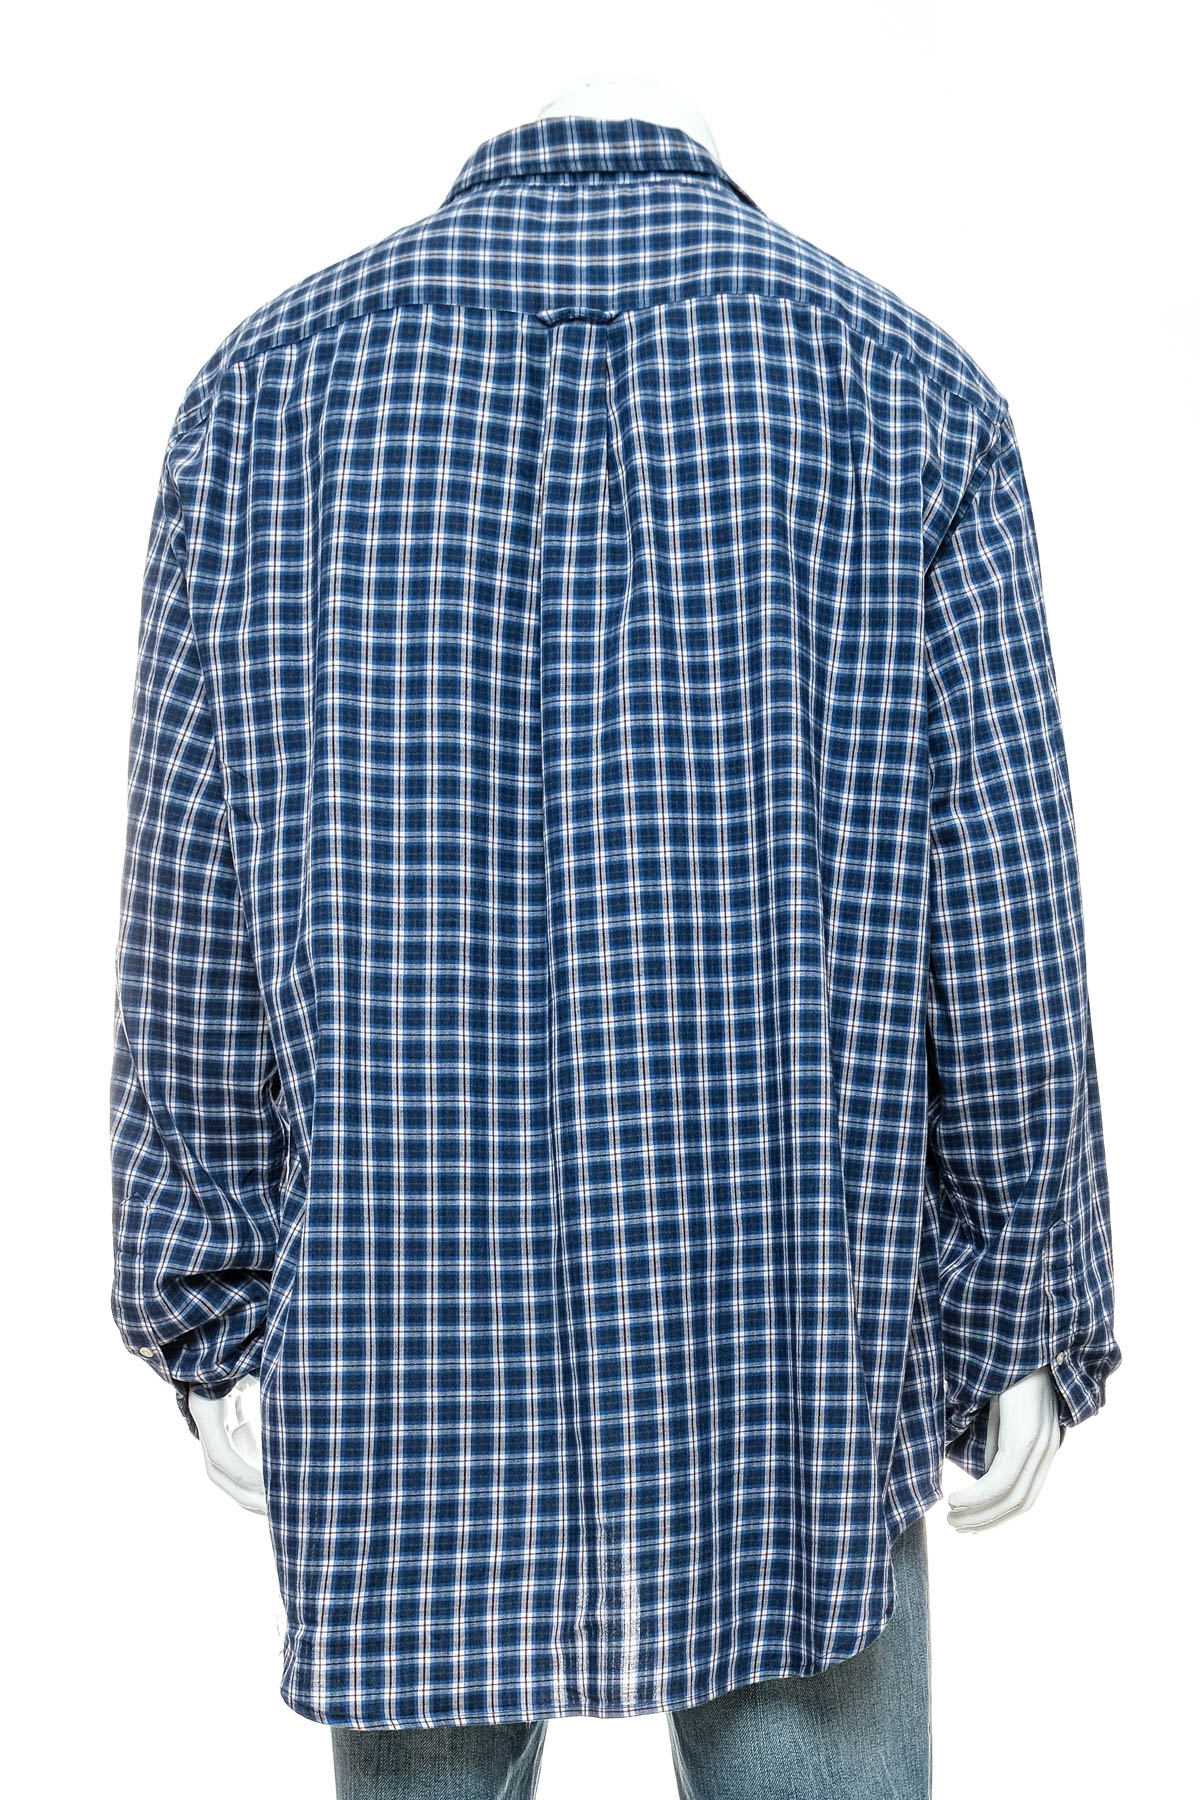 Men's shirt - Gant - 1